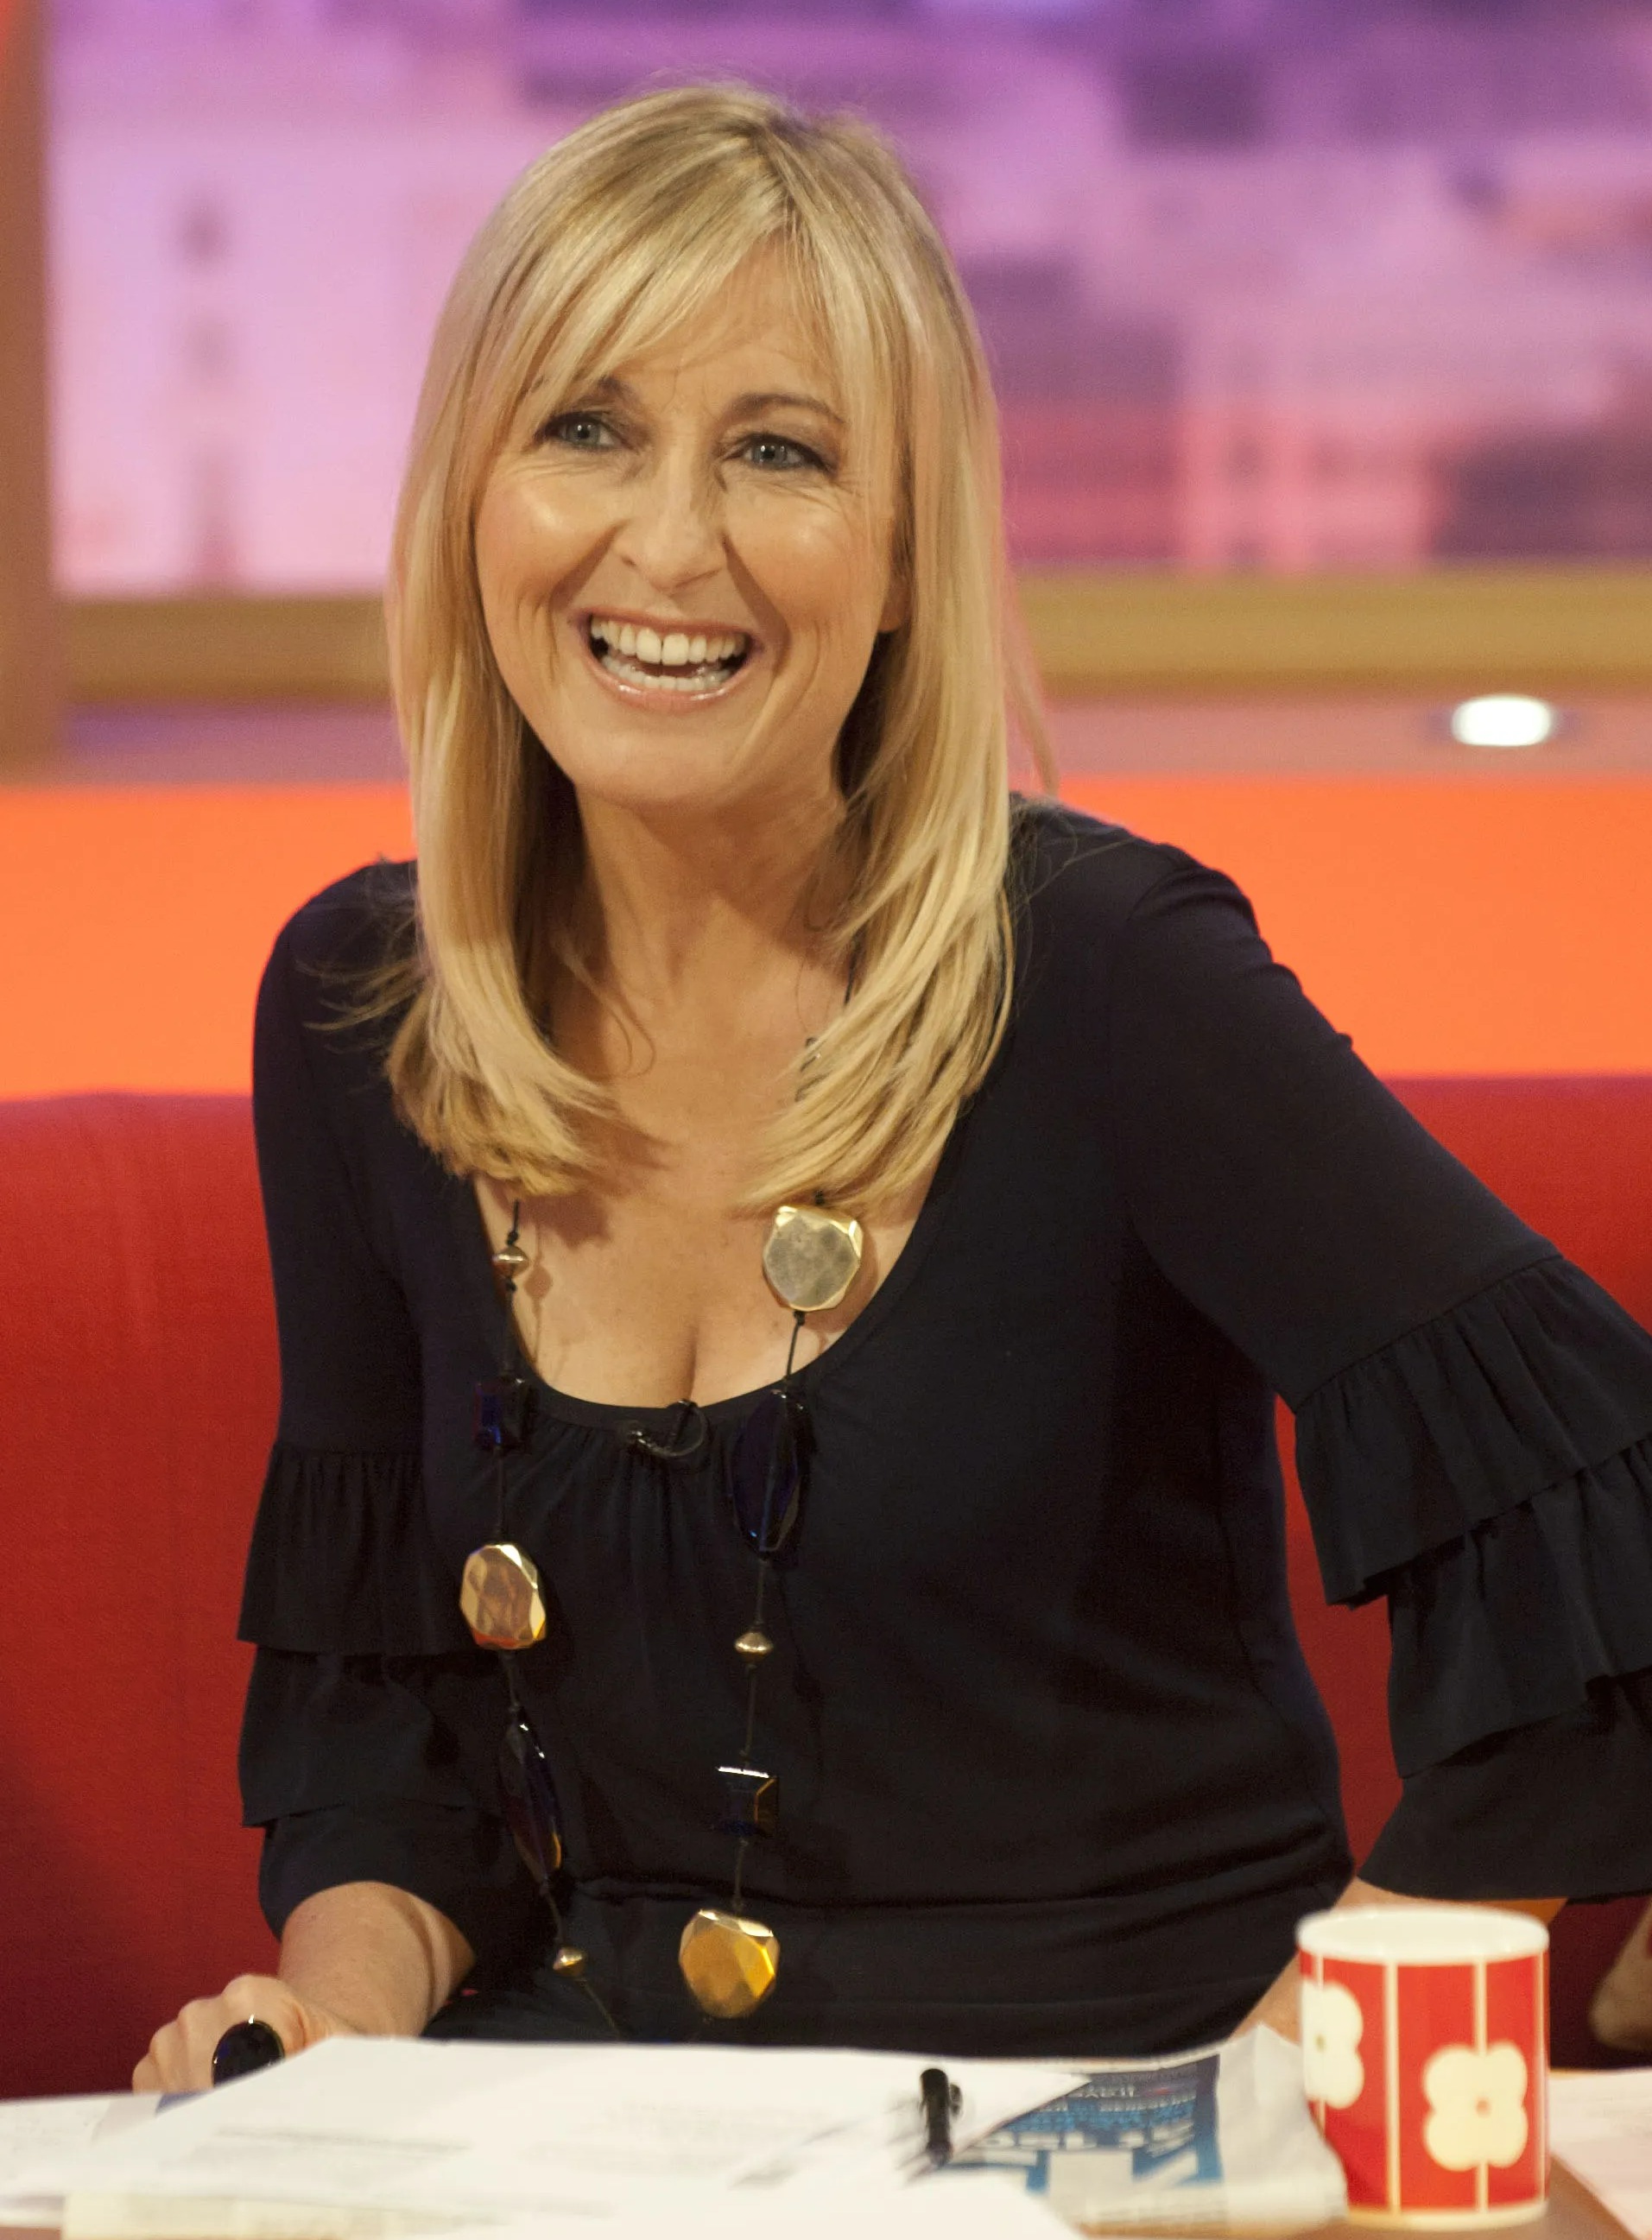 Fiona, abgebildet im Jahr 2010, verbrachte 15 Jahre damit, um 03:30 Uhr aufzustehen, um die ITV-Frühstückssendung GMTV zu moderieren